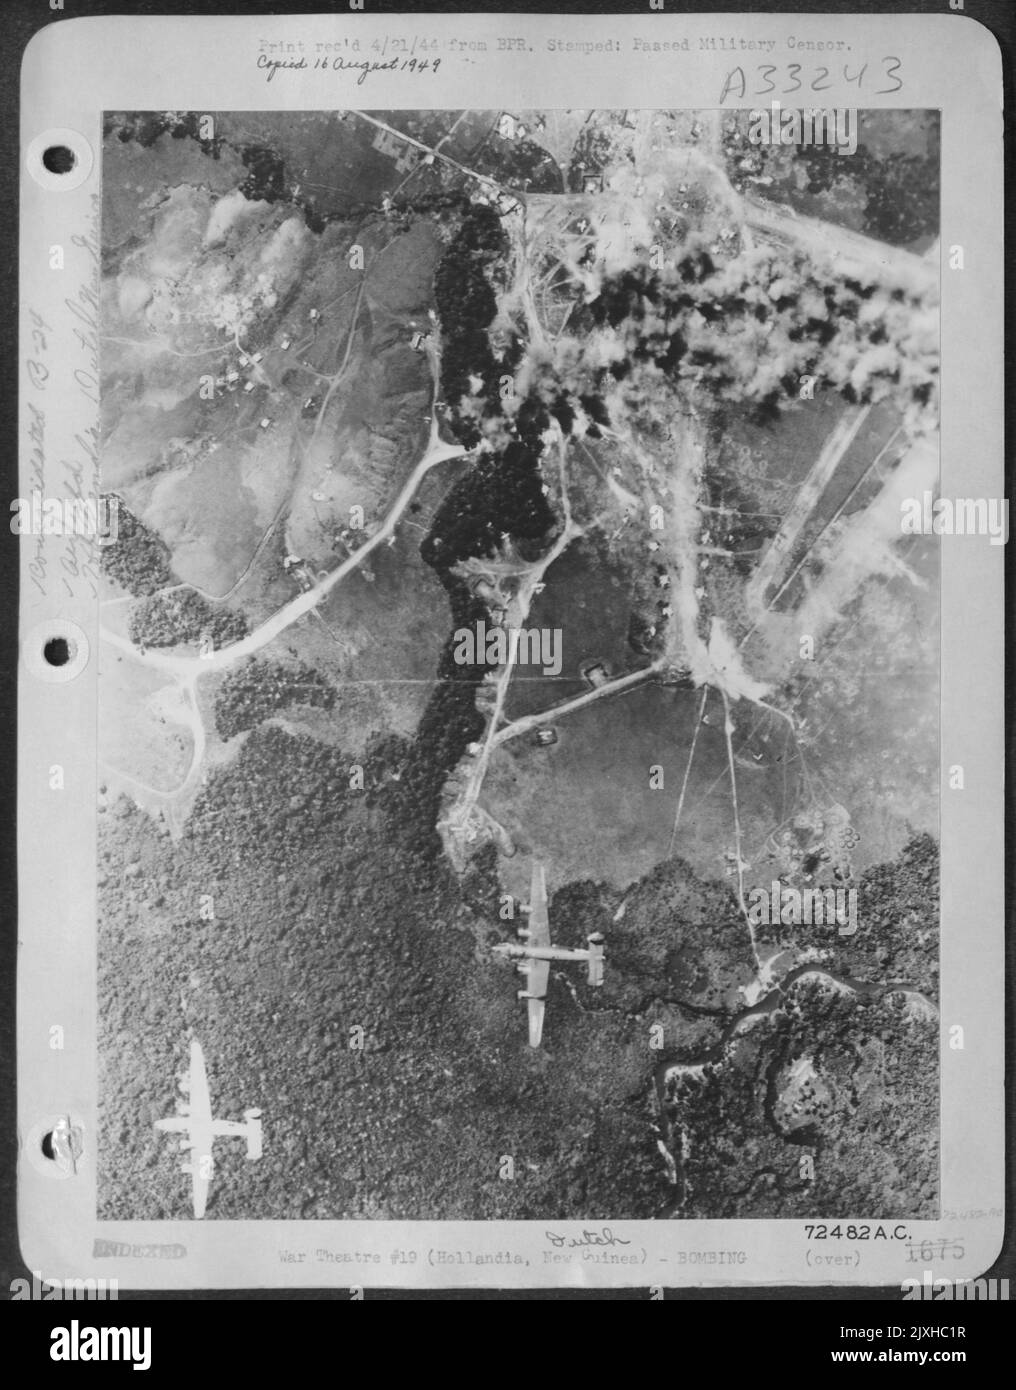 Bei drei schweren Angriffen zerstörten General MacArthur'S Bomber 288 feindliche Flugzeuge auf den japanischen Flugplätzen in Hollandia oder beschädigten sie irreparabel. Hier fliegen die konsolidierten B-24 Liberatoren nach dem Zerpulverisieren Des dispergierigen Areals weiter. Stockfoto